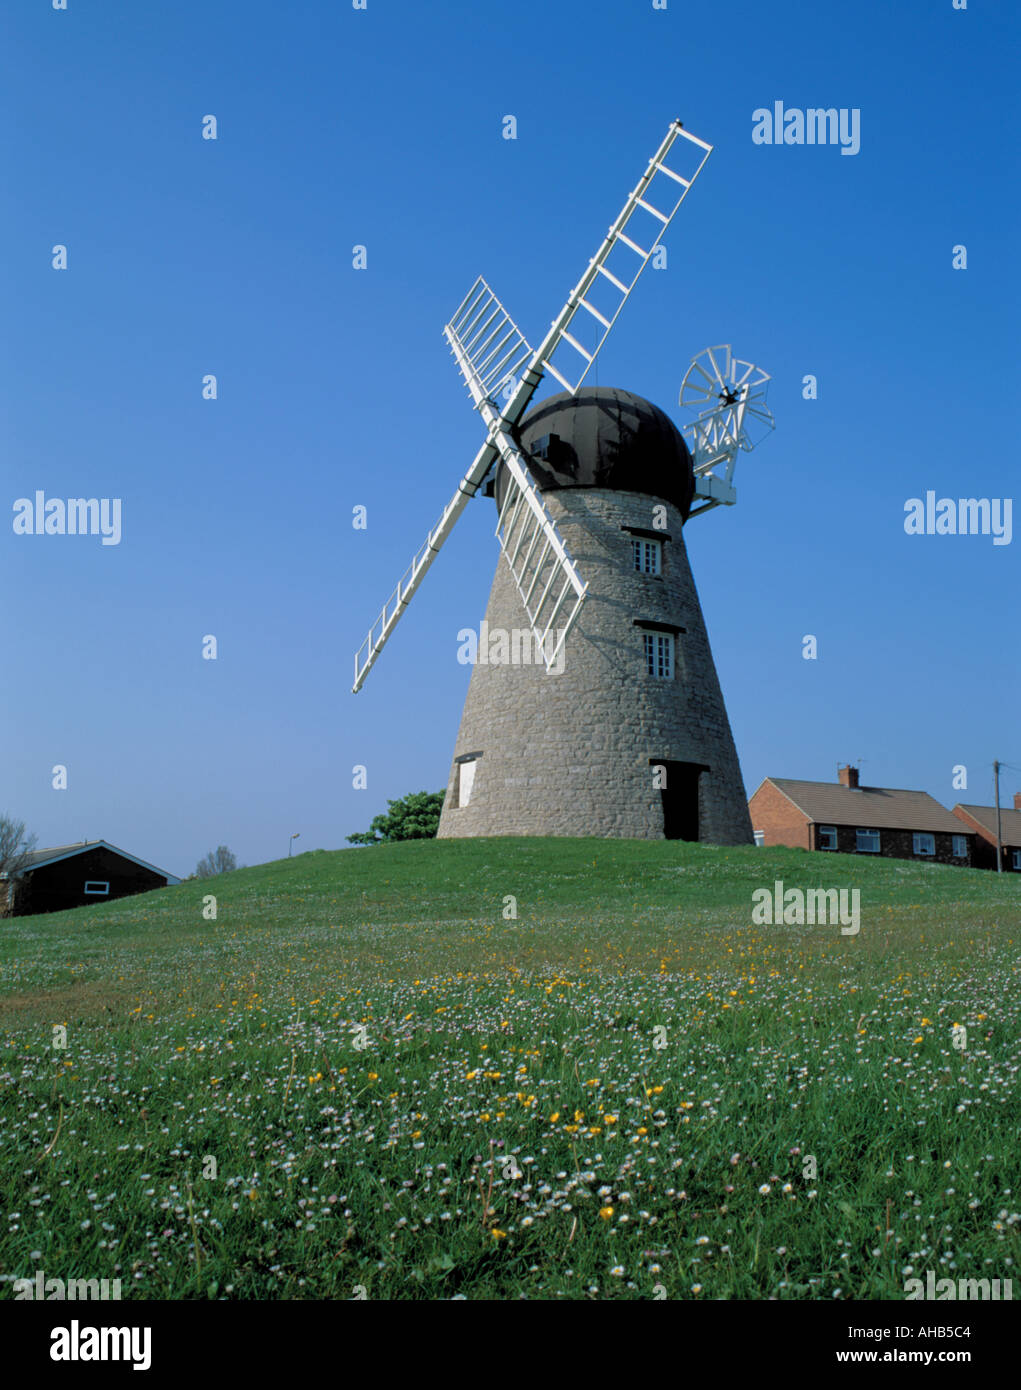 Whitburn pittoresque moulin, Whitburn, village près de South Shields, Tyne and Wear, England, UK. Banque D'Images